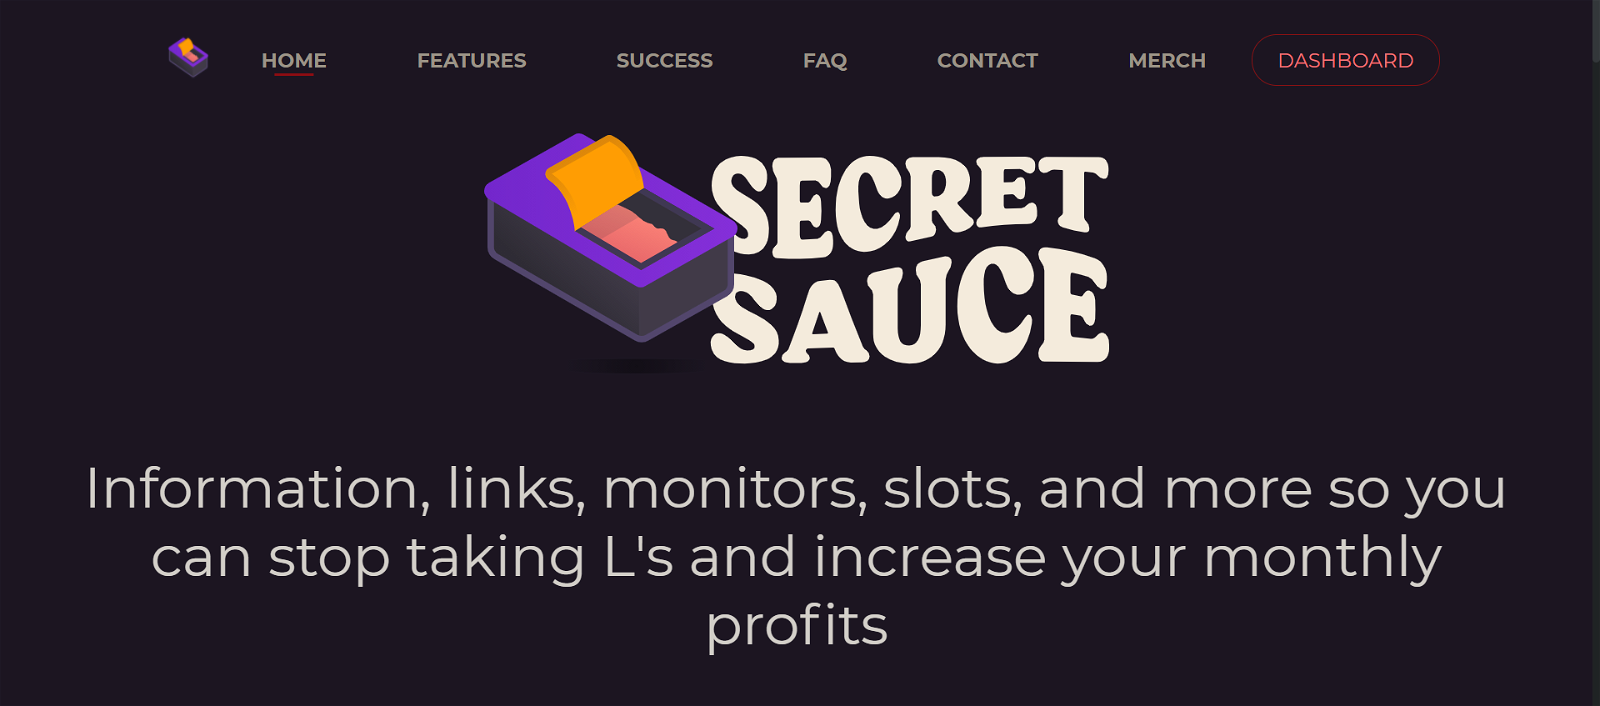 Secret Sauce cook group presentation banner